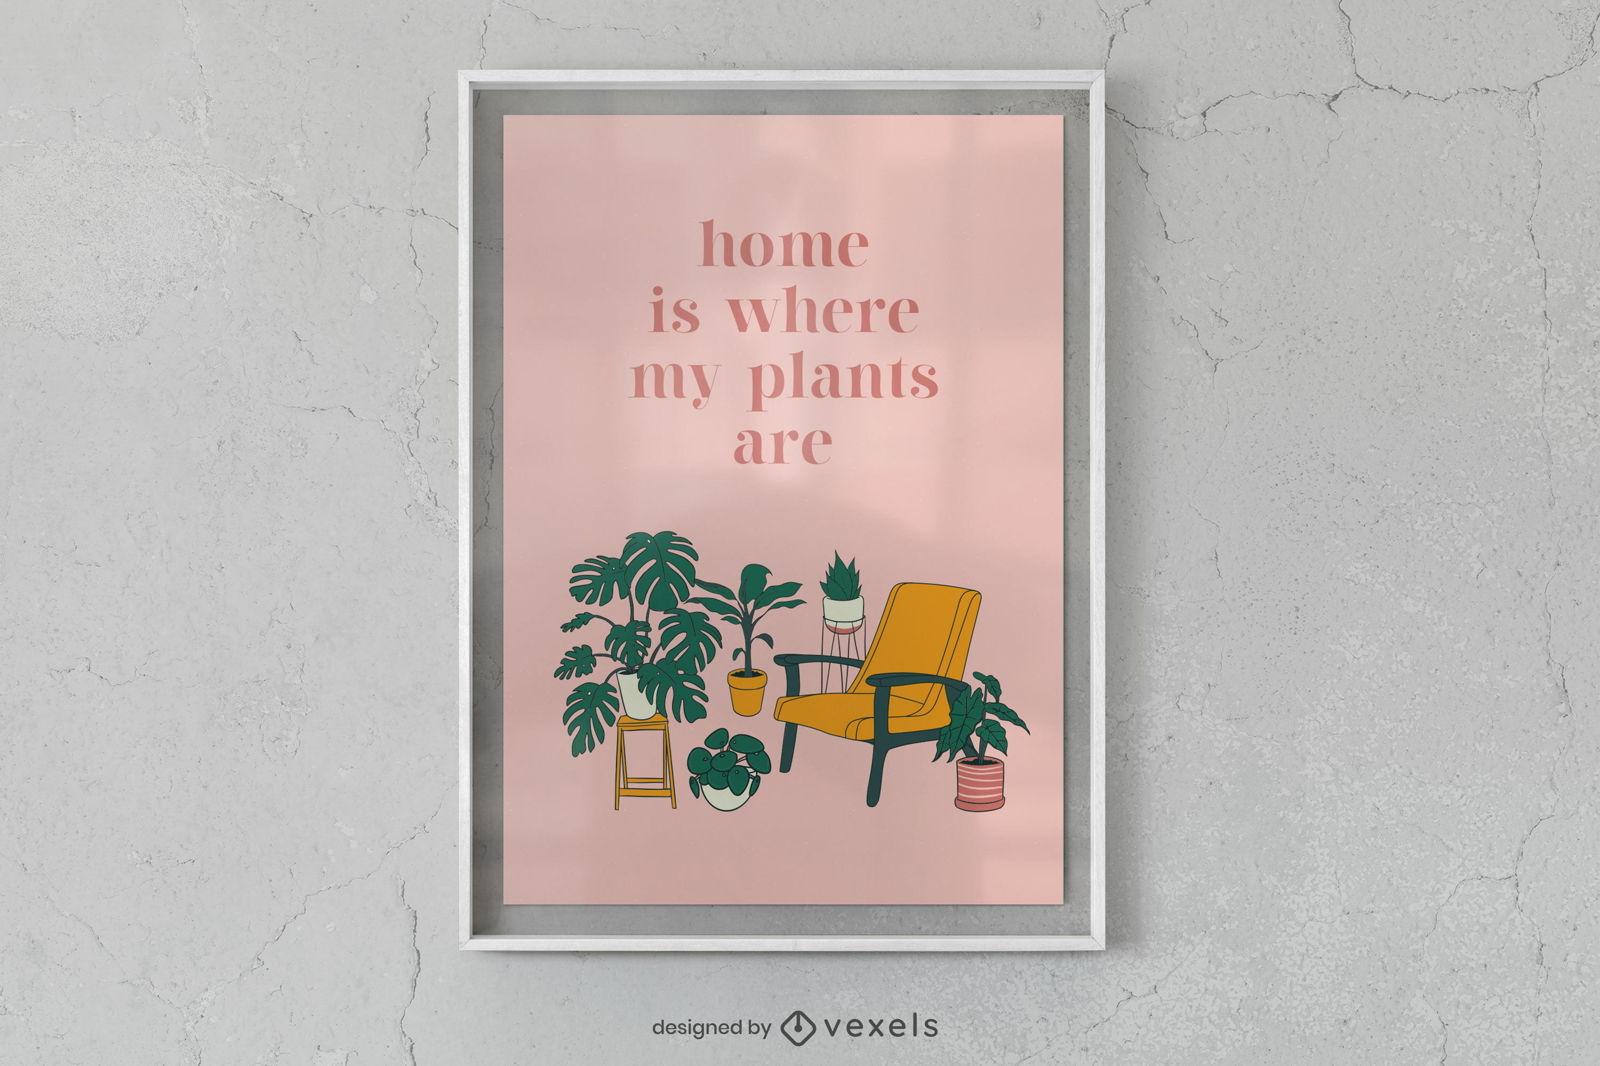 El hogar es donde están mis plantas, diseño de carteles.